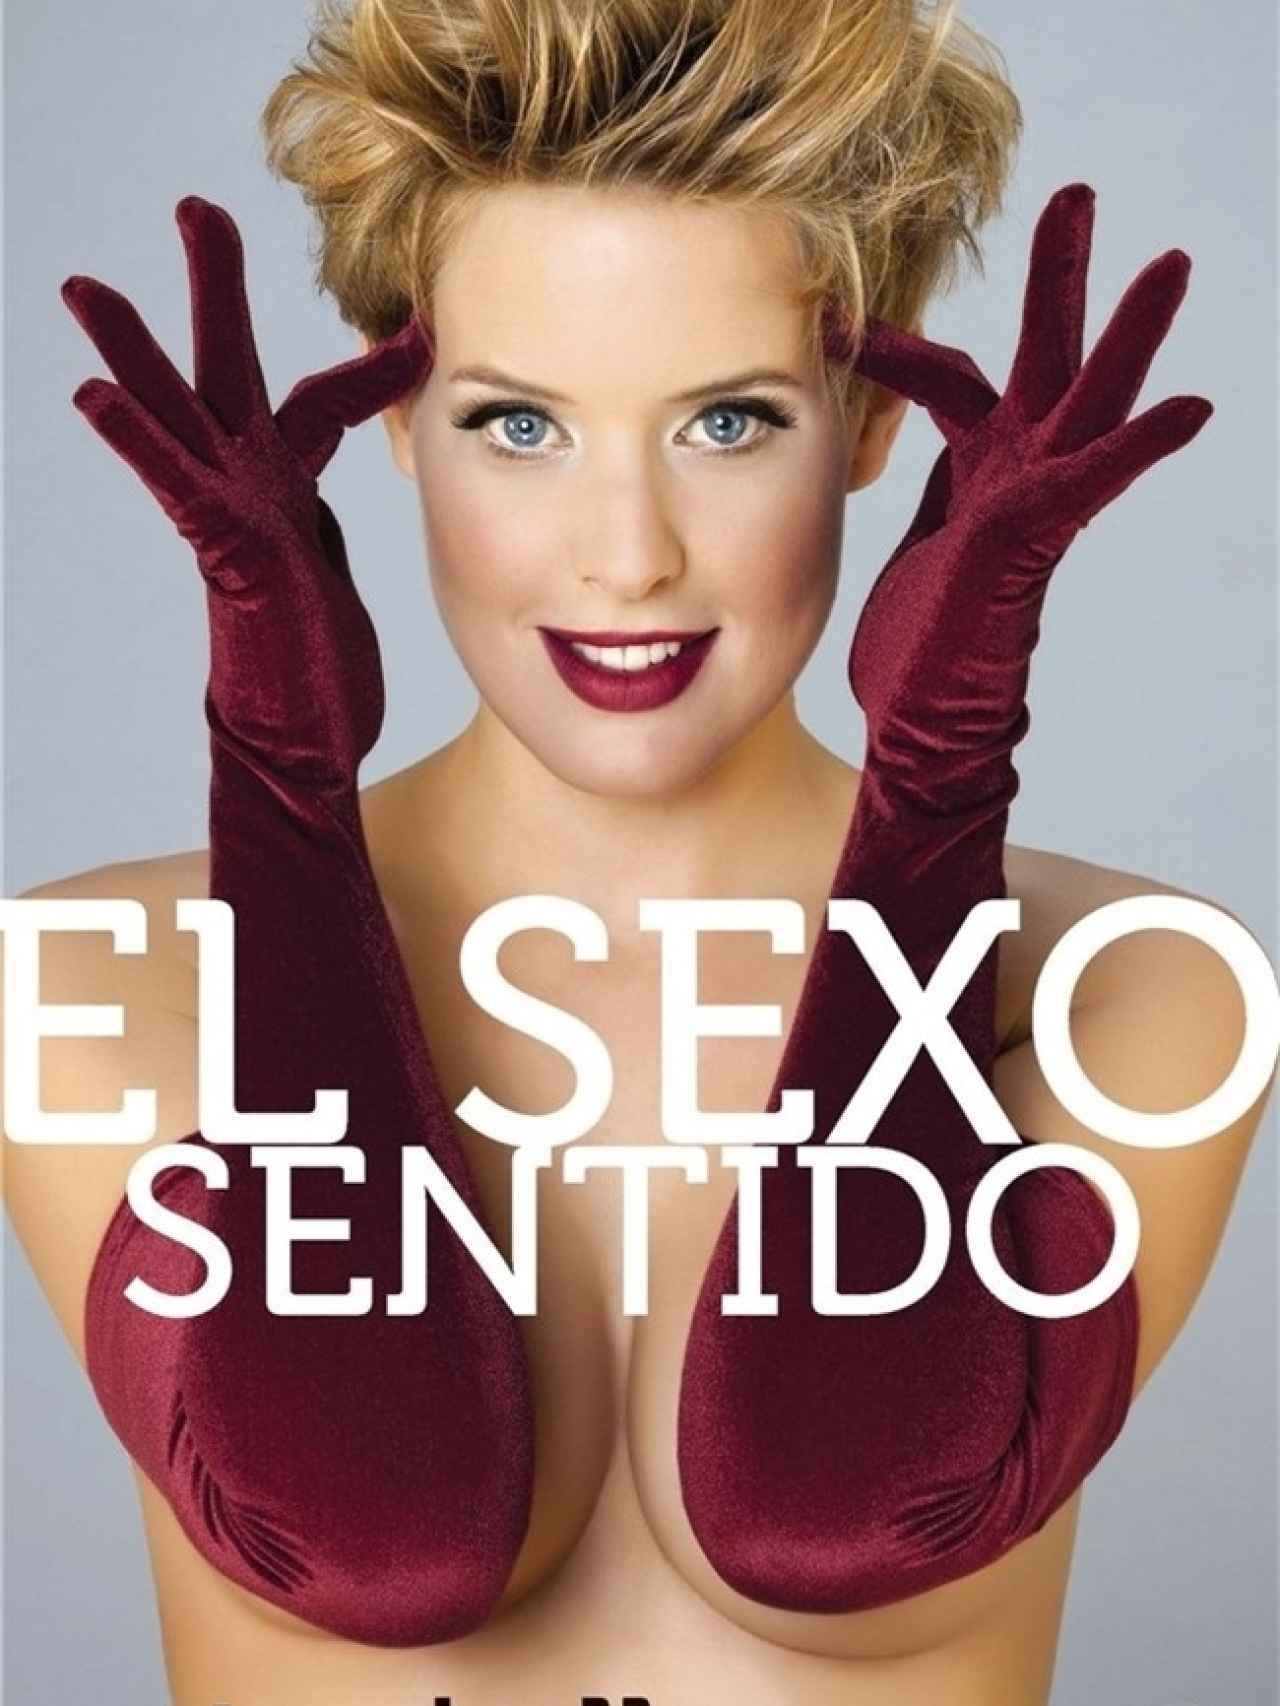 Tania Llasera en la portada de su libro El Sexo Sentido